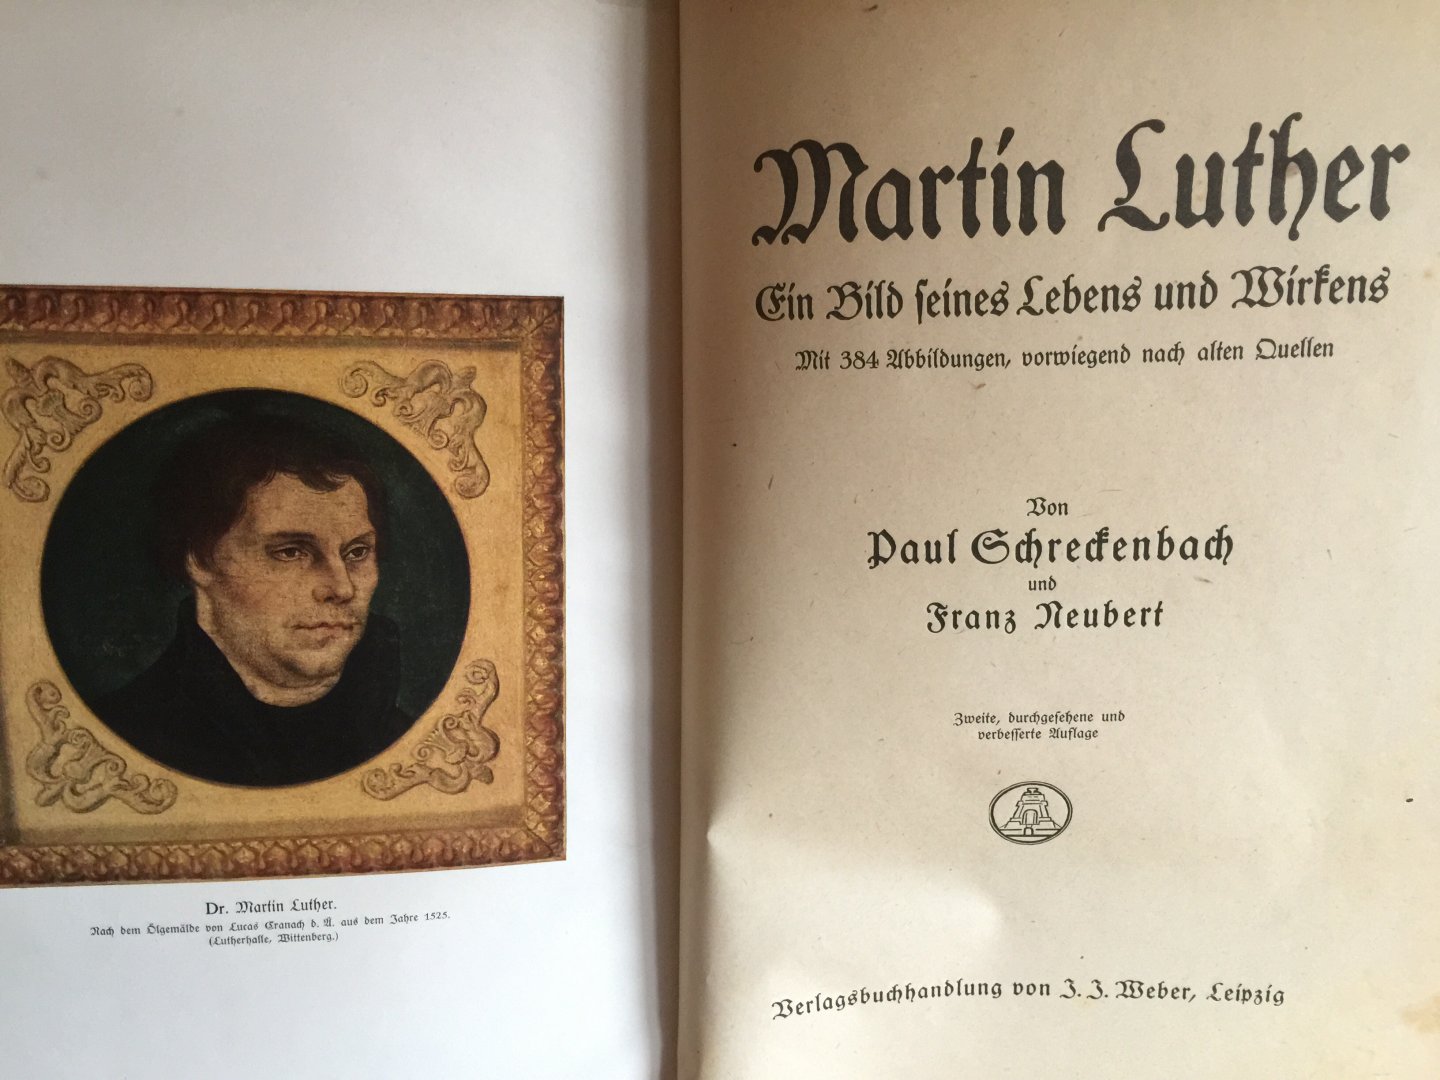 Schredenbach , Neubert - MARTIN LUTHER, Ein Bild seines Lebens und Wirtens